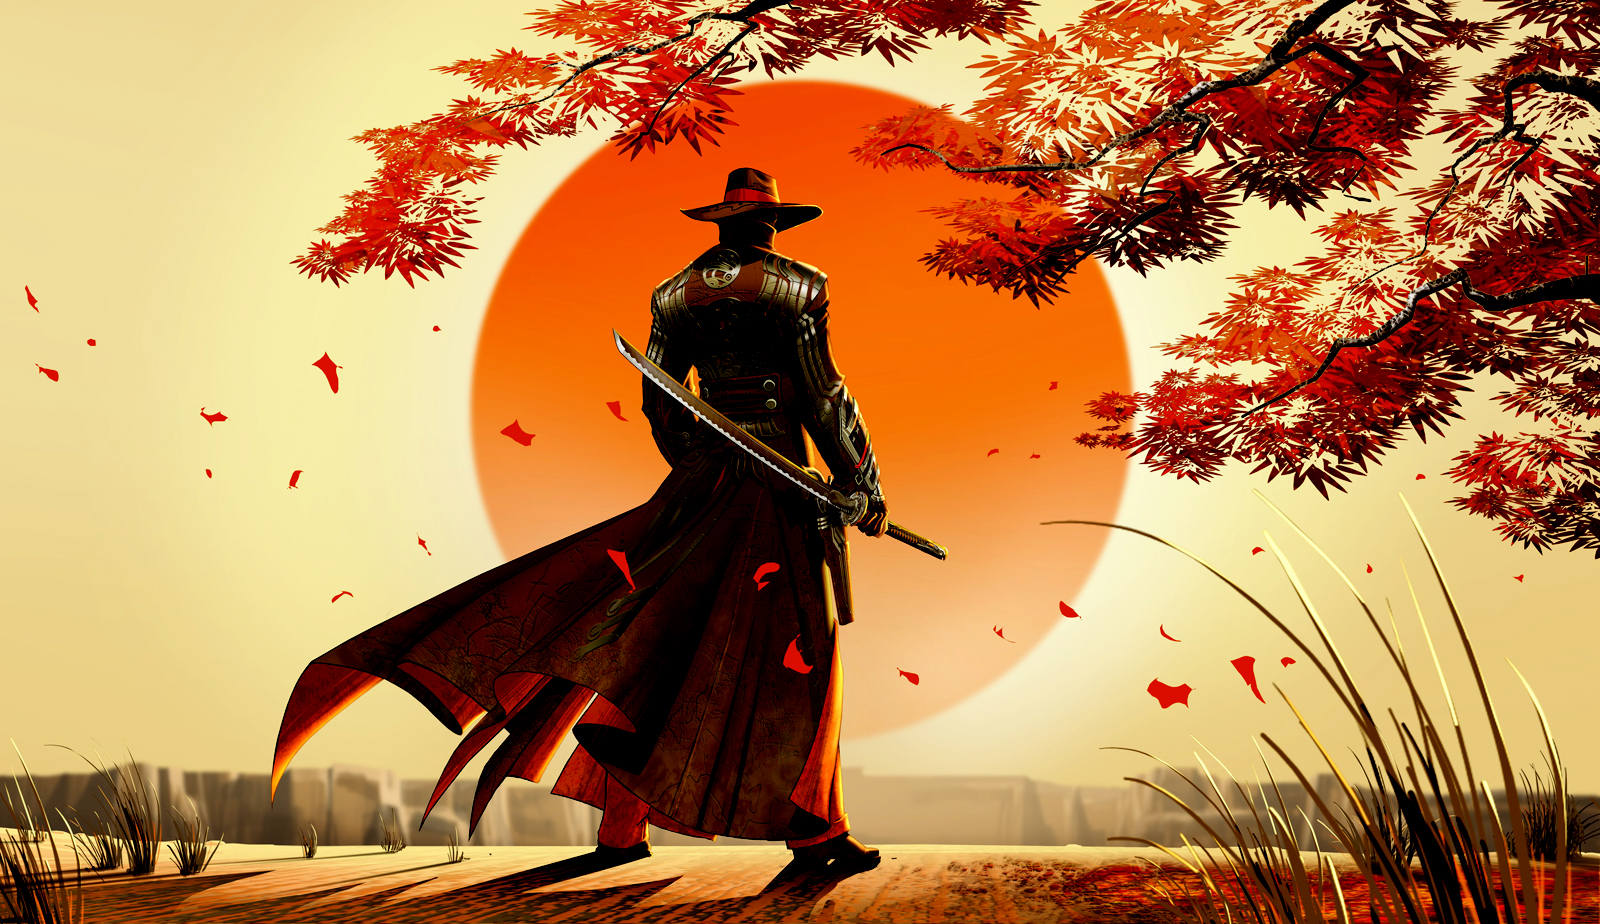 Cool 3d Samurai Wallpaper Picture High Resolution